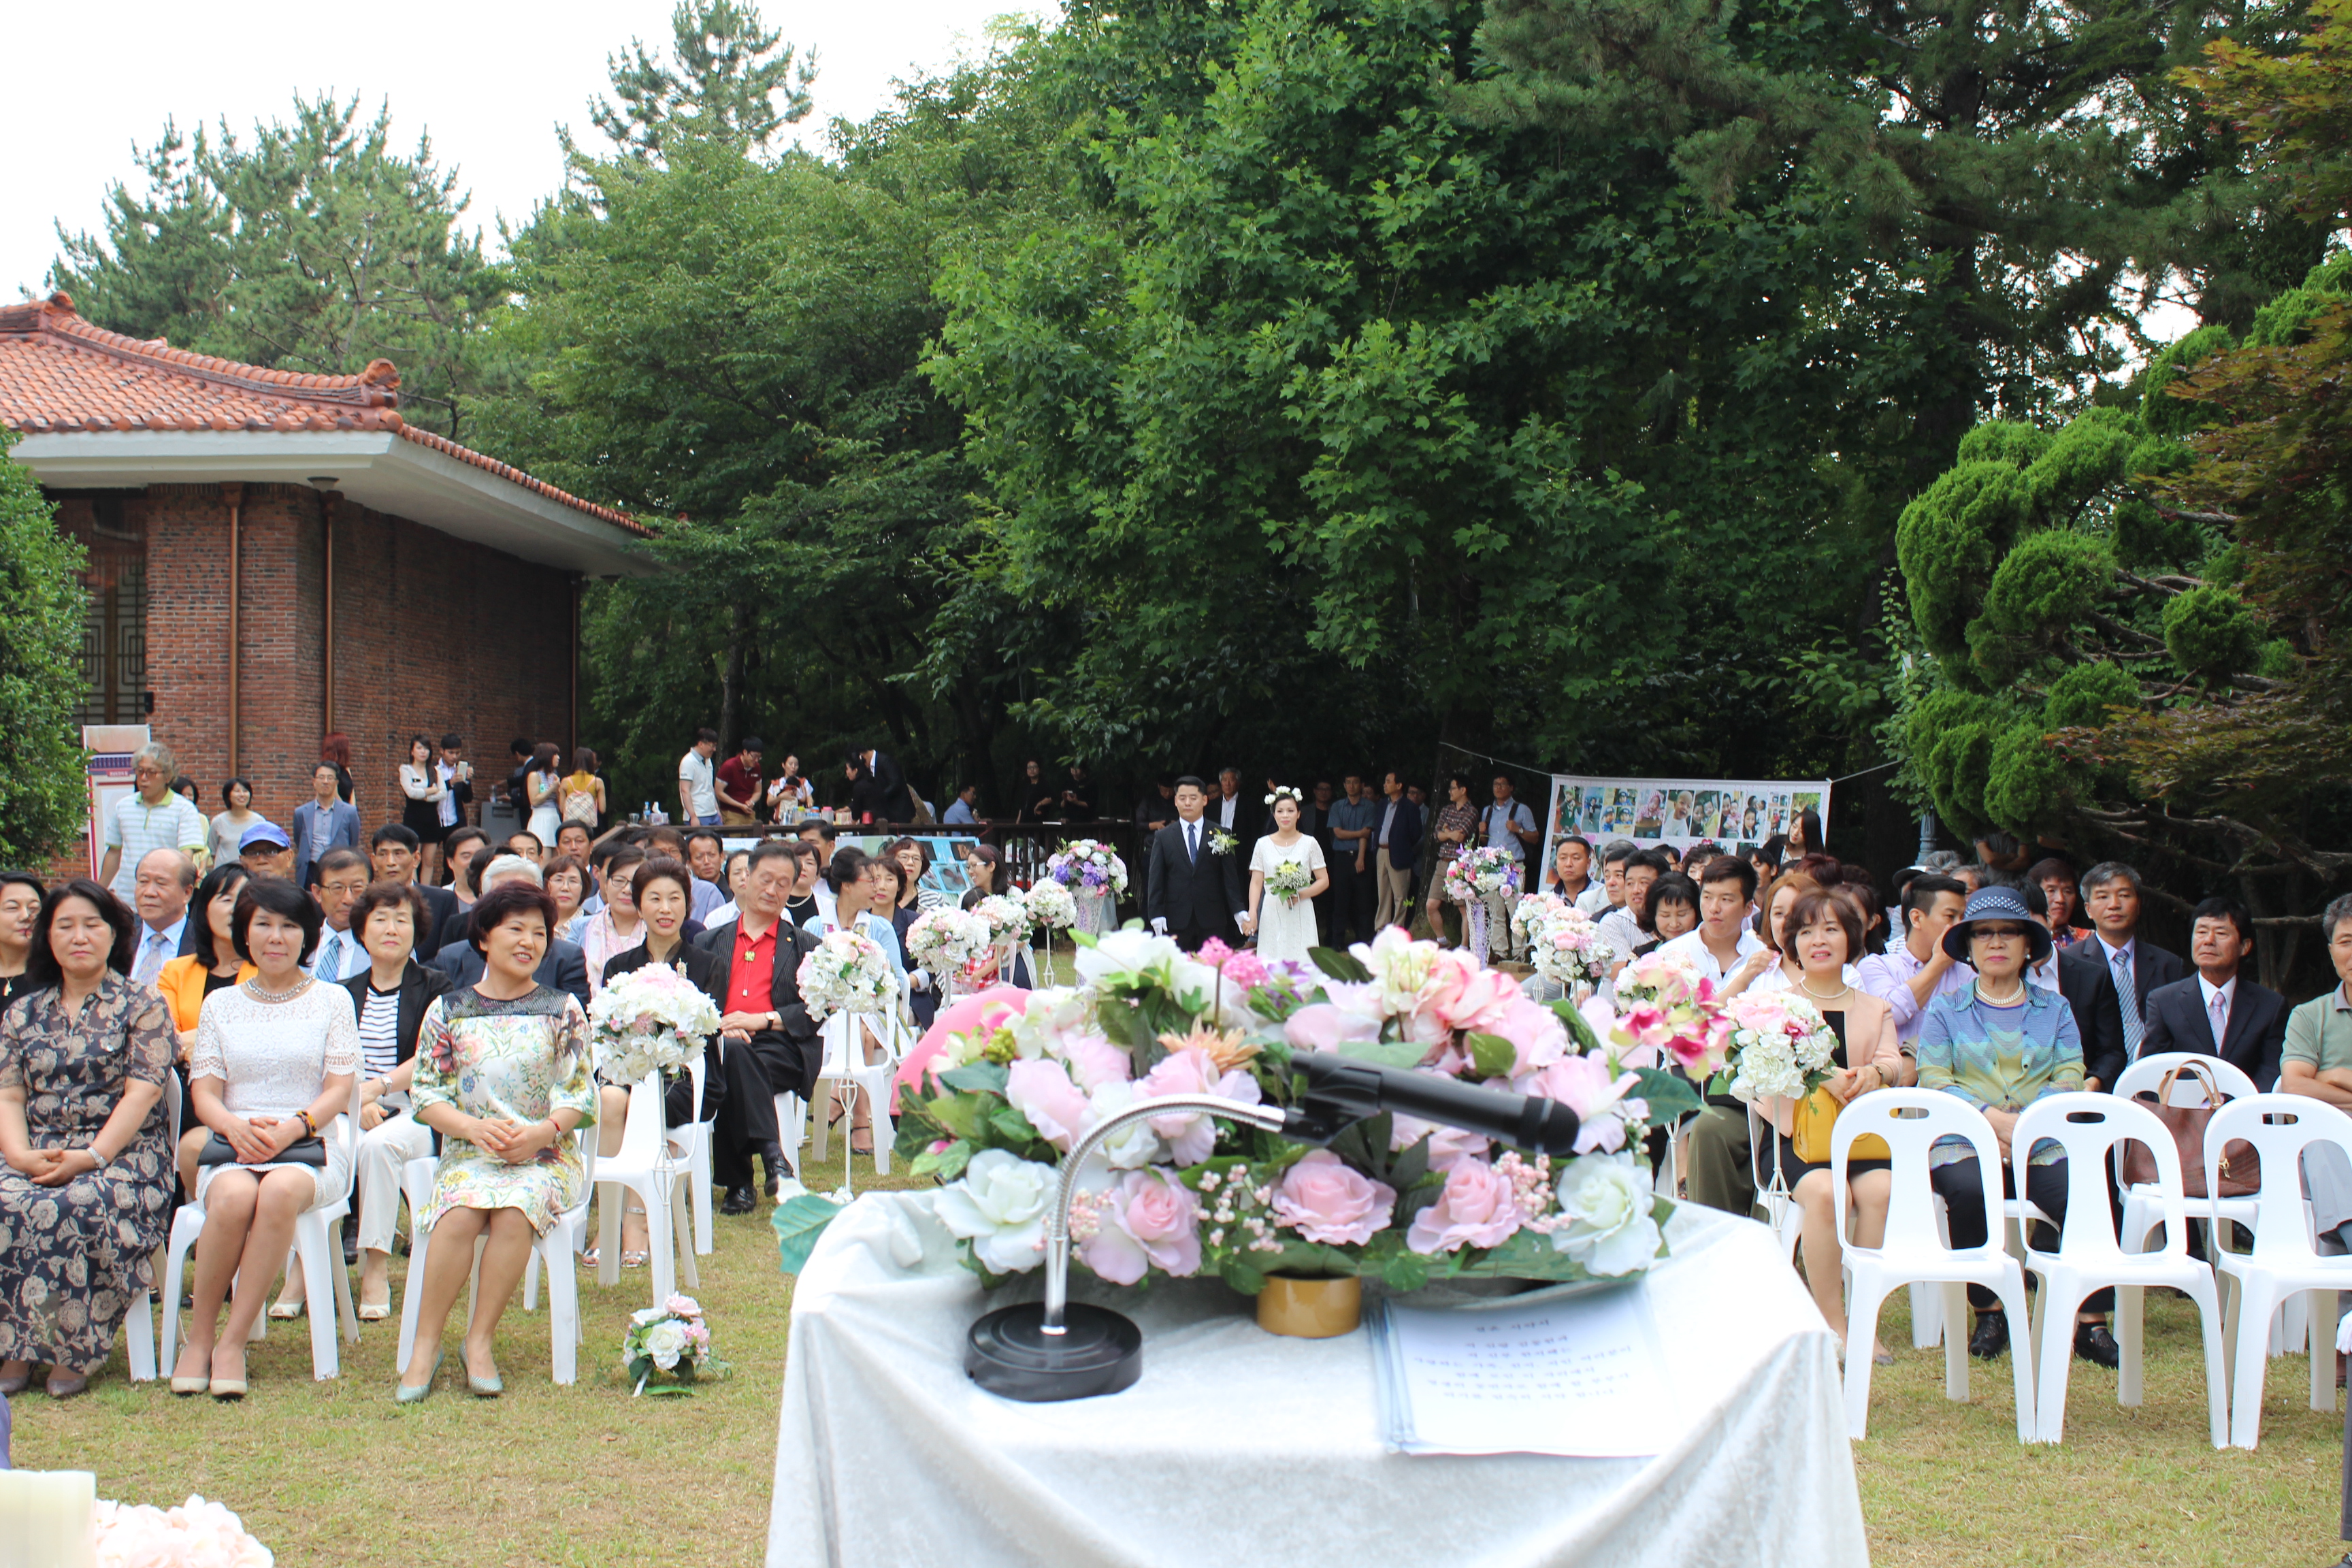 지난 7월4일 경남도민의집에서 열린 첫 작은 결혼식 광경.jpg